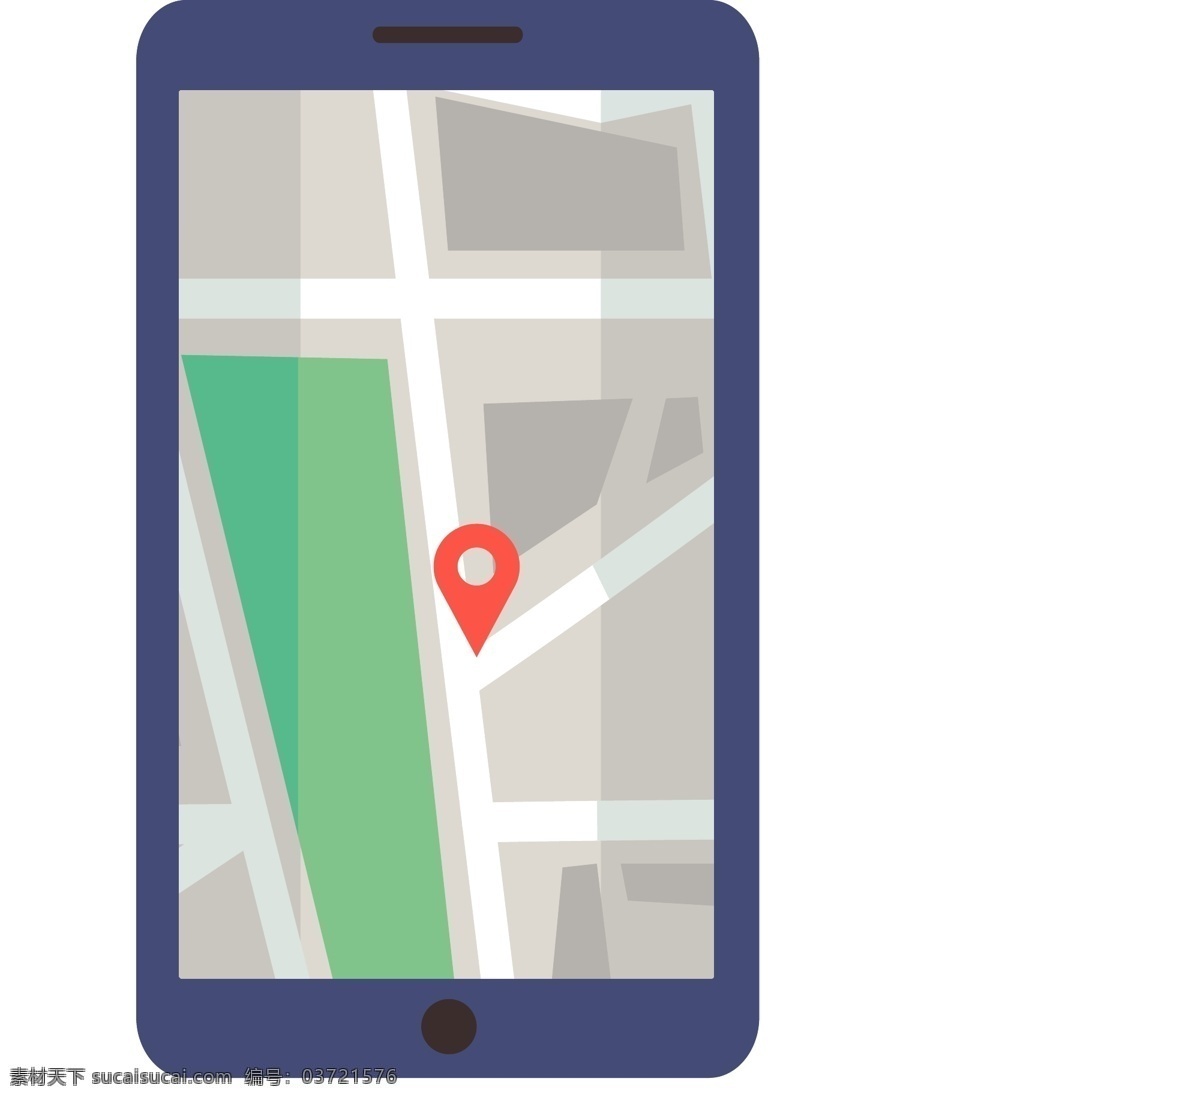 卡通 矢量 手机 地图 定位 卡通矢量 迷路 导航 智能导航 gps 问路 搜索 路线 手机定位